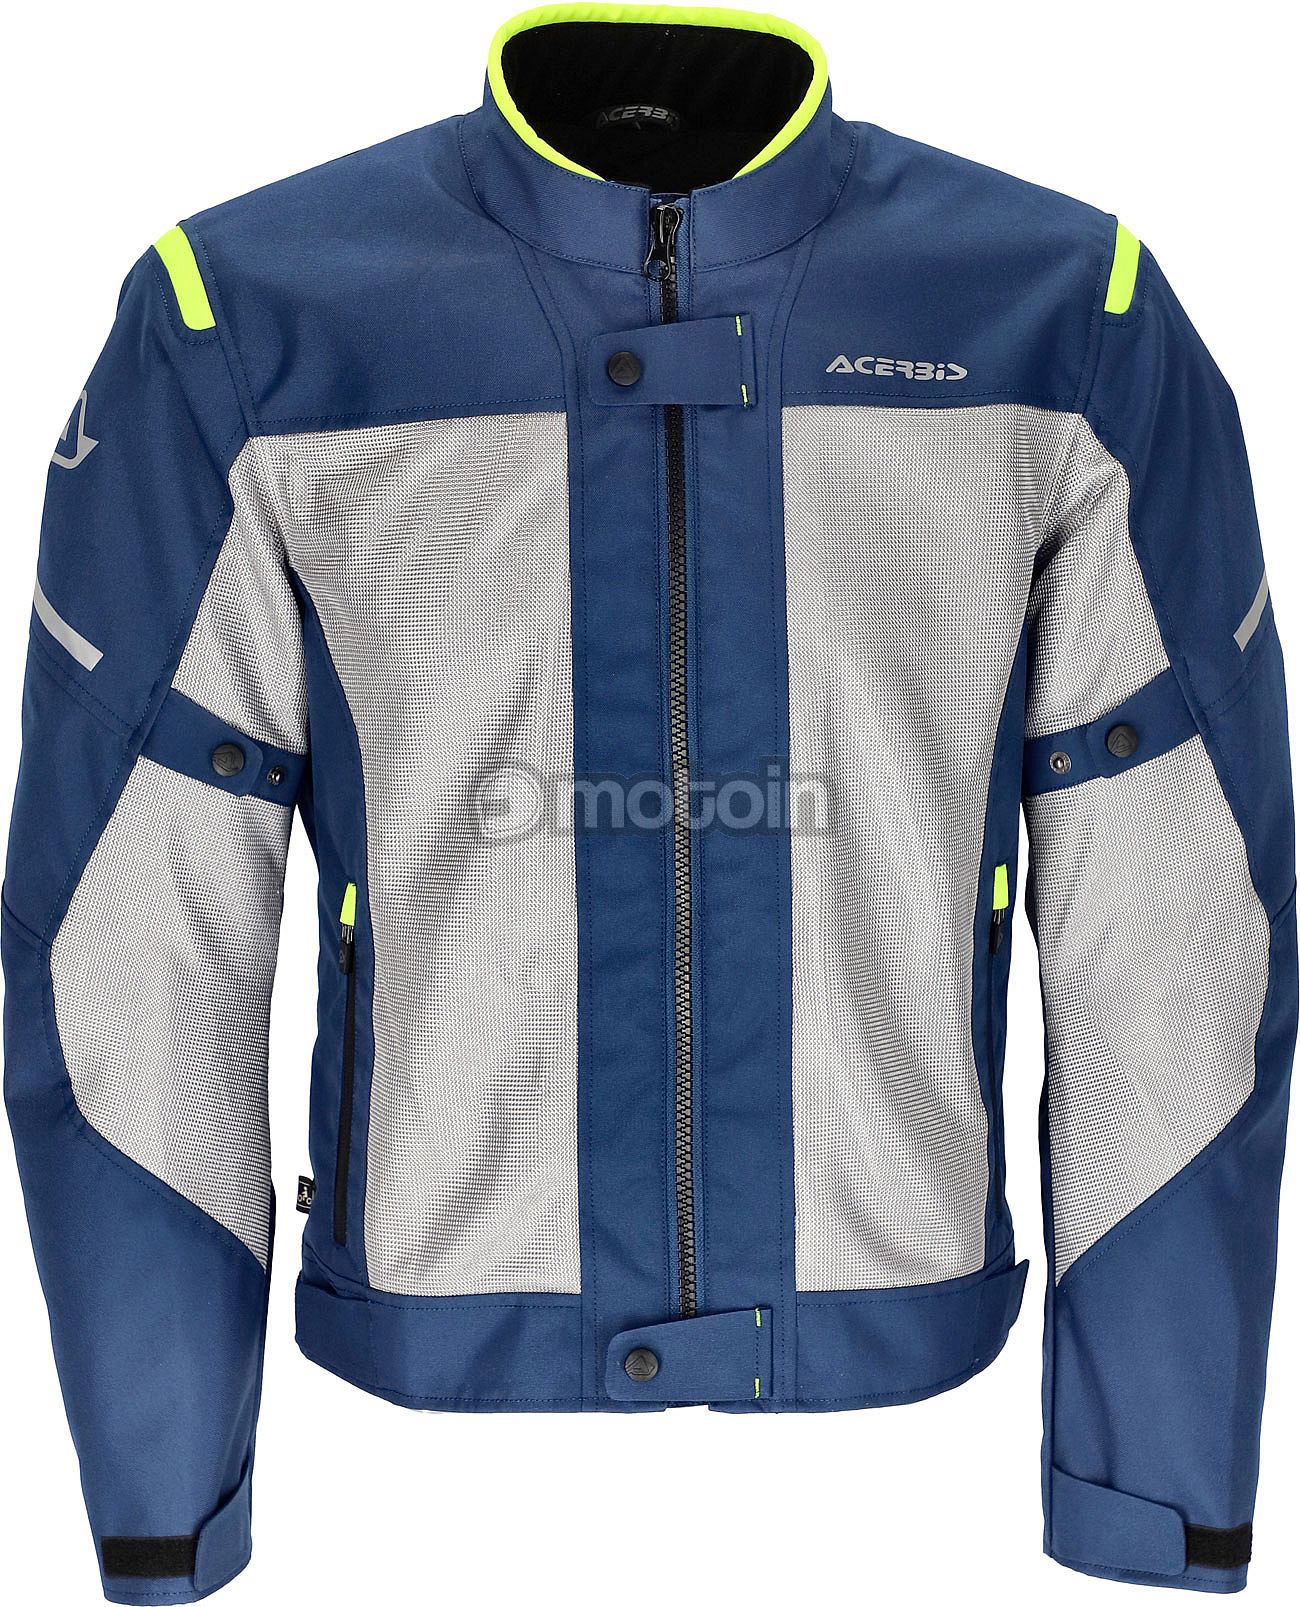 Acerbis Ramsey chaqueta textil - motoin.de